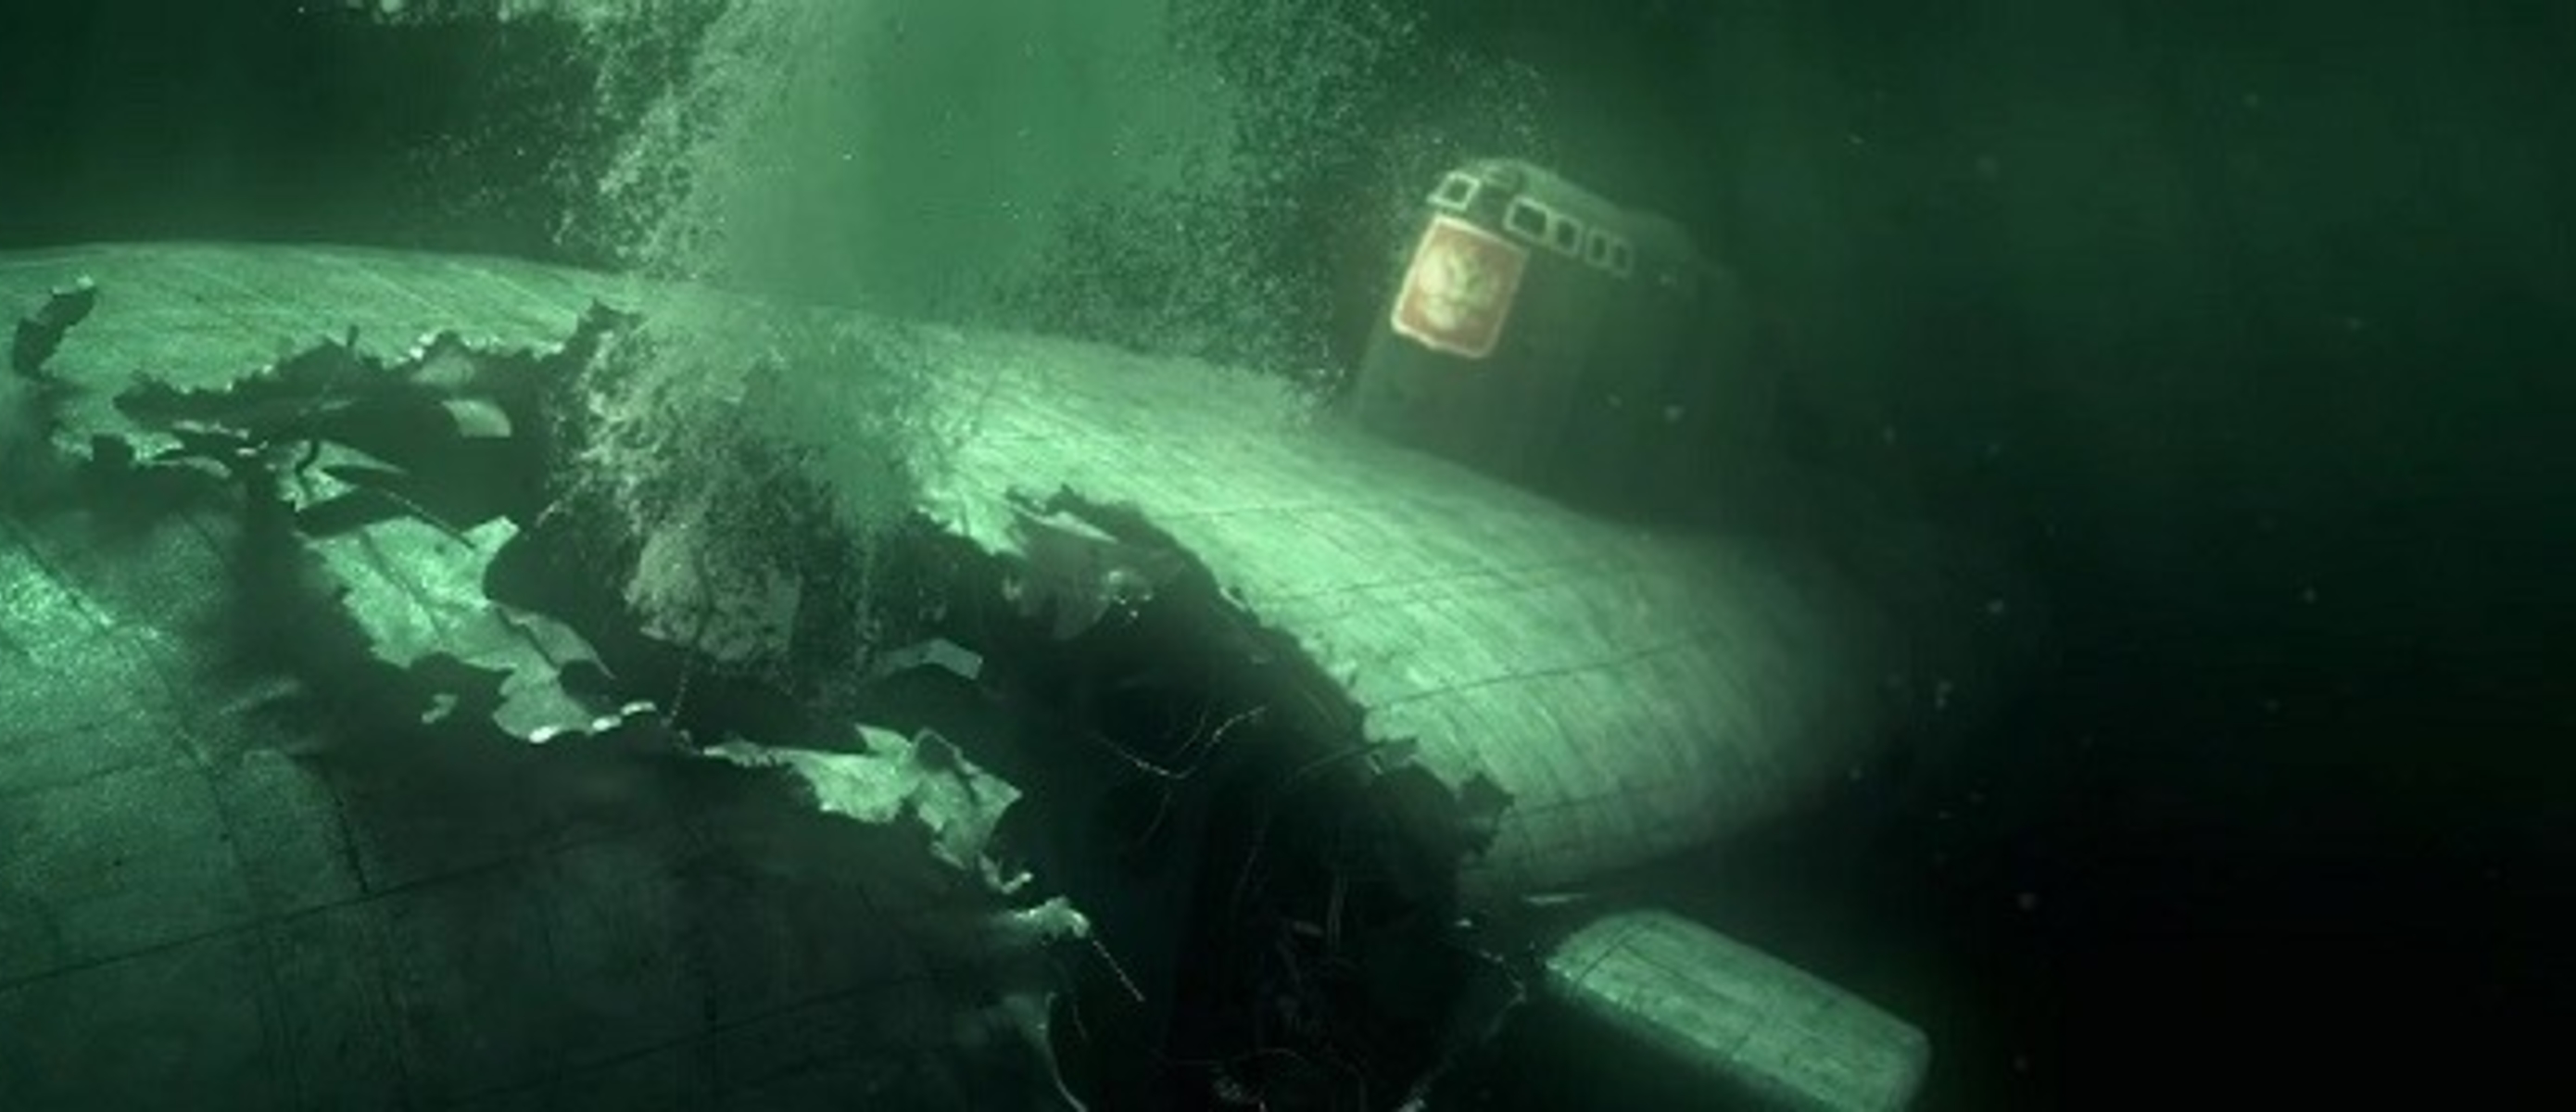 Где затонул курск подводная. Подводная лодка к-141 «Курск». Курск подводная лодка катастрофа. Курск 141 атомная подводная лодка. К-141 «Курск».